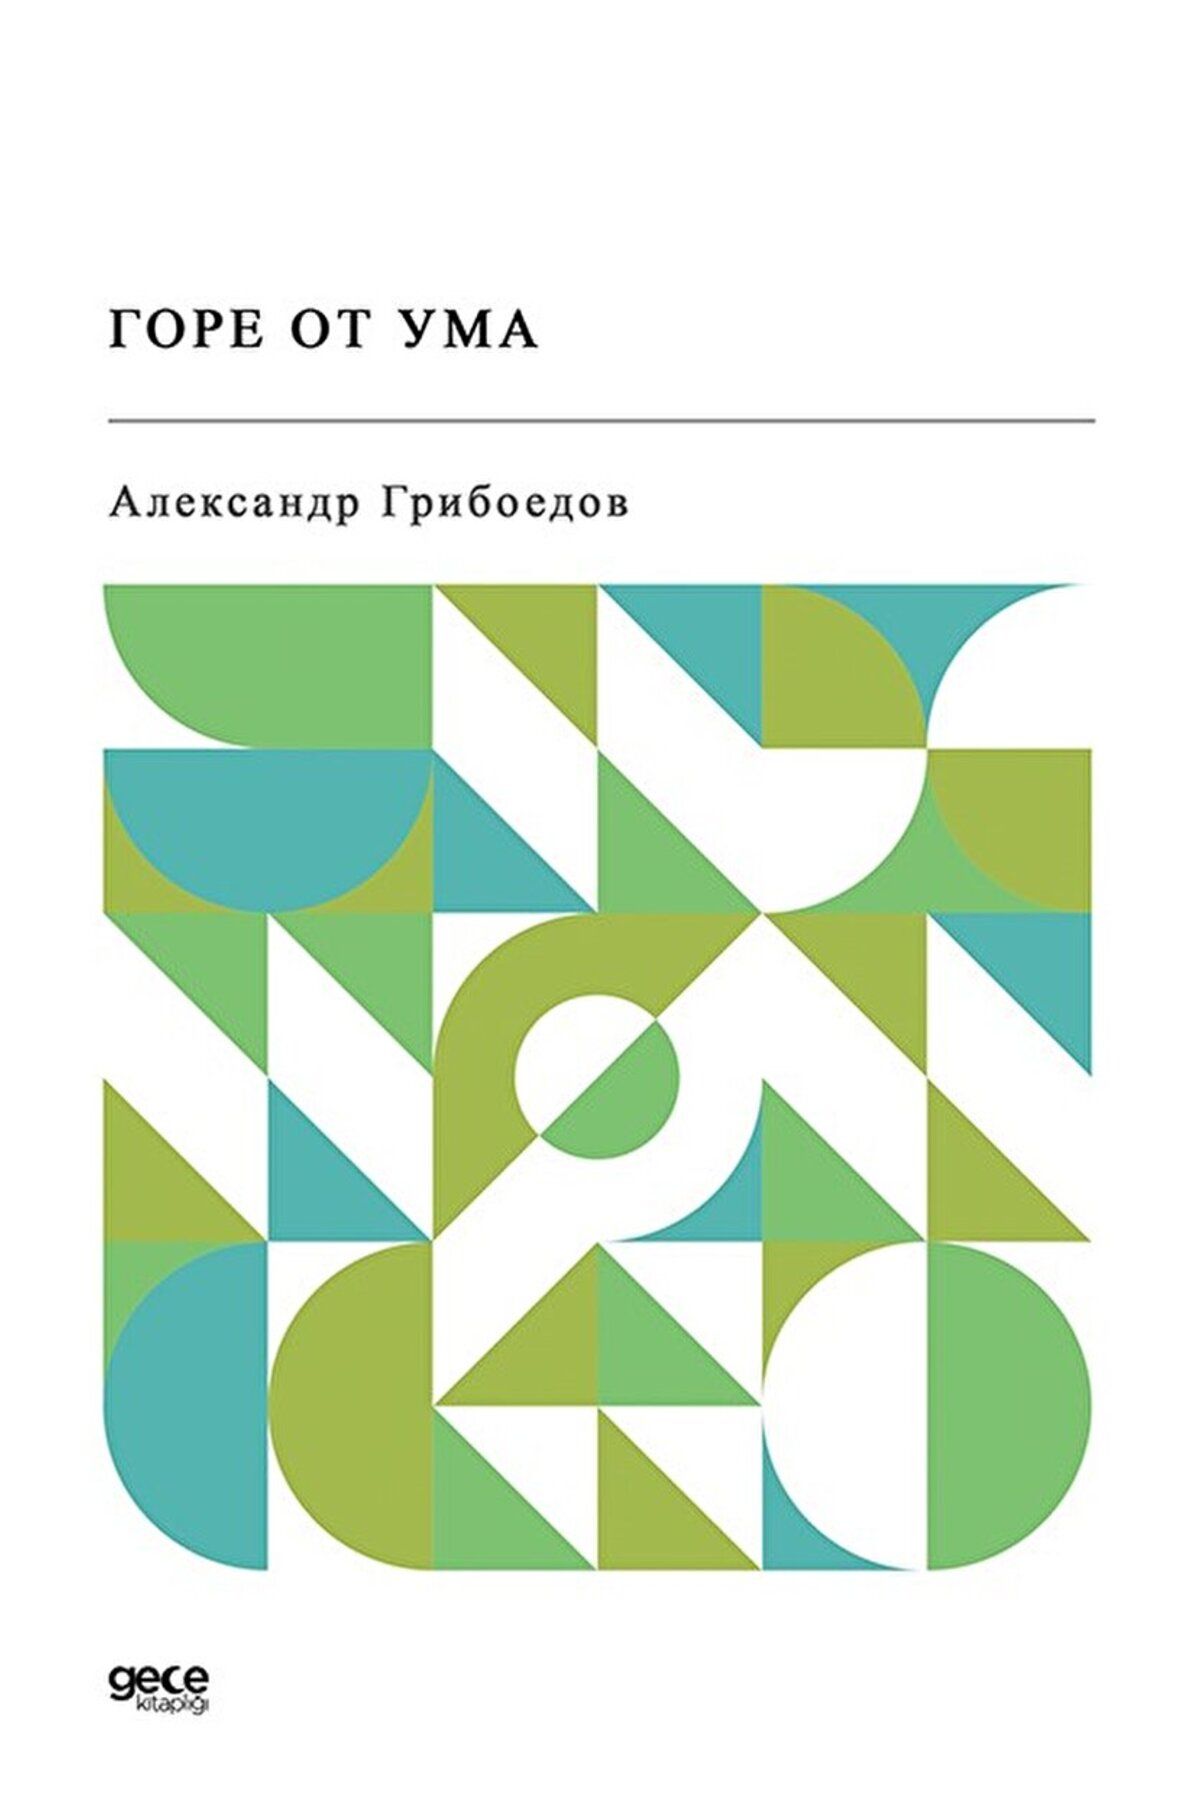 Gece Kitaplığı Gore Ot Uma (Rusça) / Alexander Sergeevich Griboedov / Gece Kitaplığı / 9786254300974